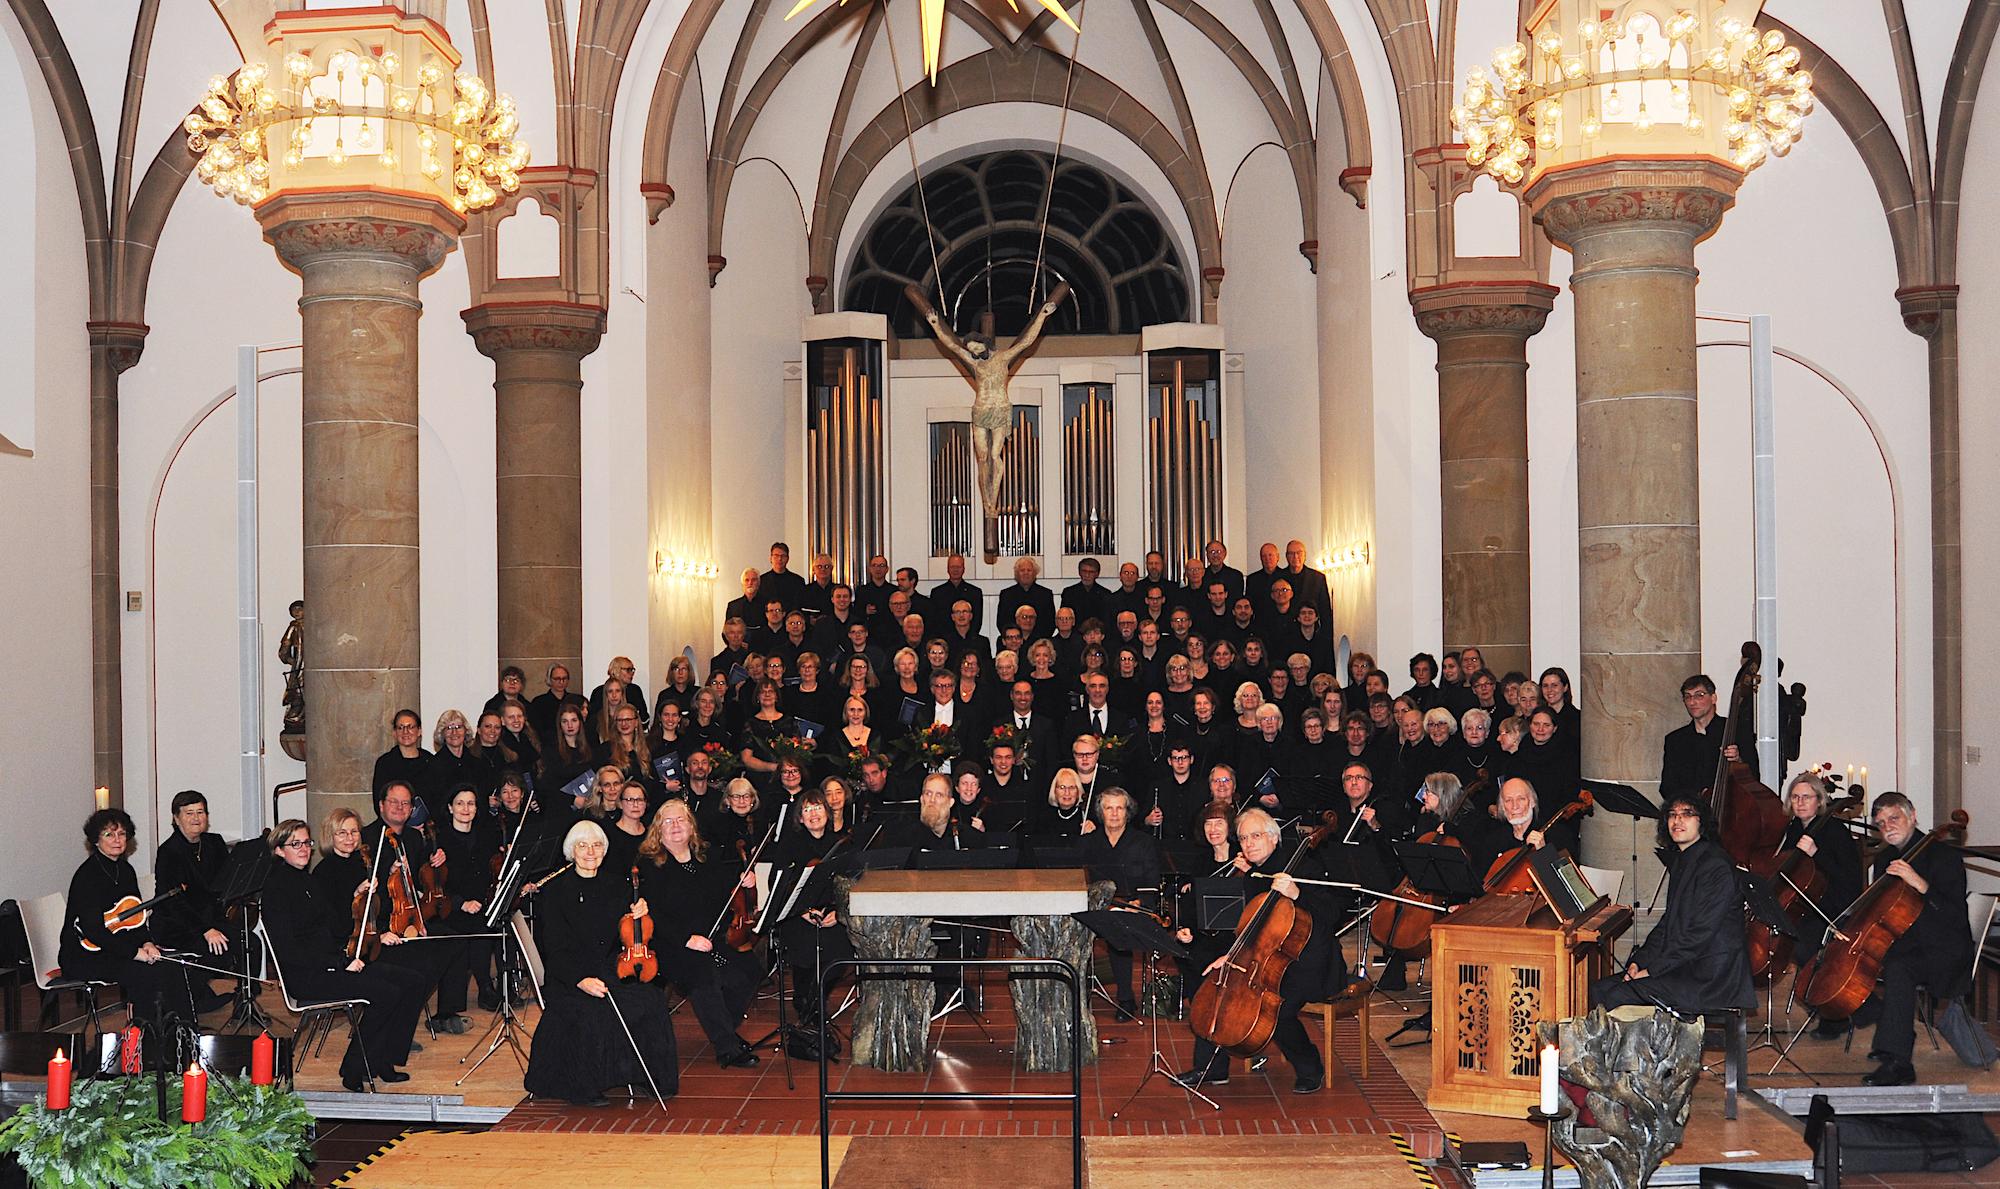 Auftakt zum Jubiläumsjahr war ein weihnachtliches Konzert in der Kirche St. Laurentius mit dem Kammerorchester der Gemeinde.